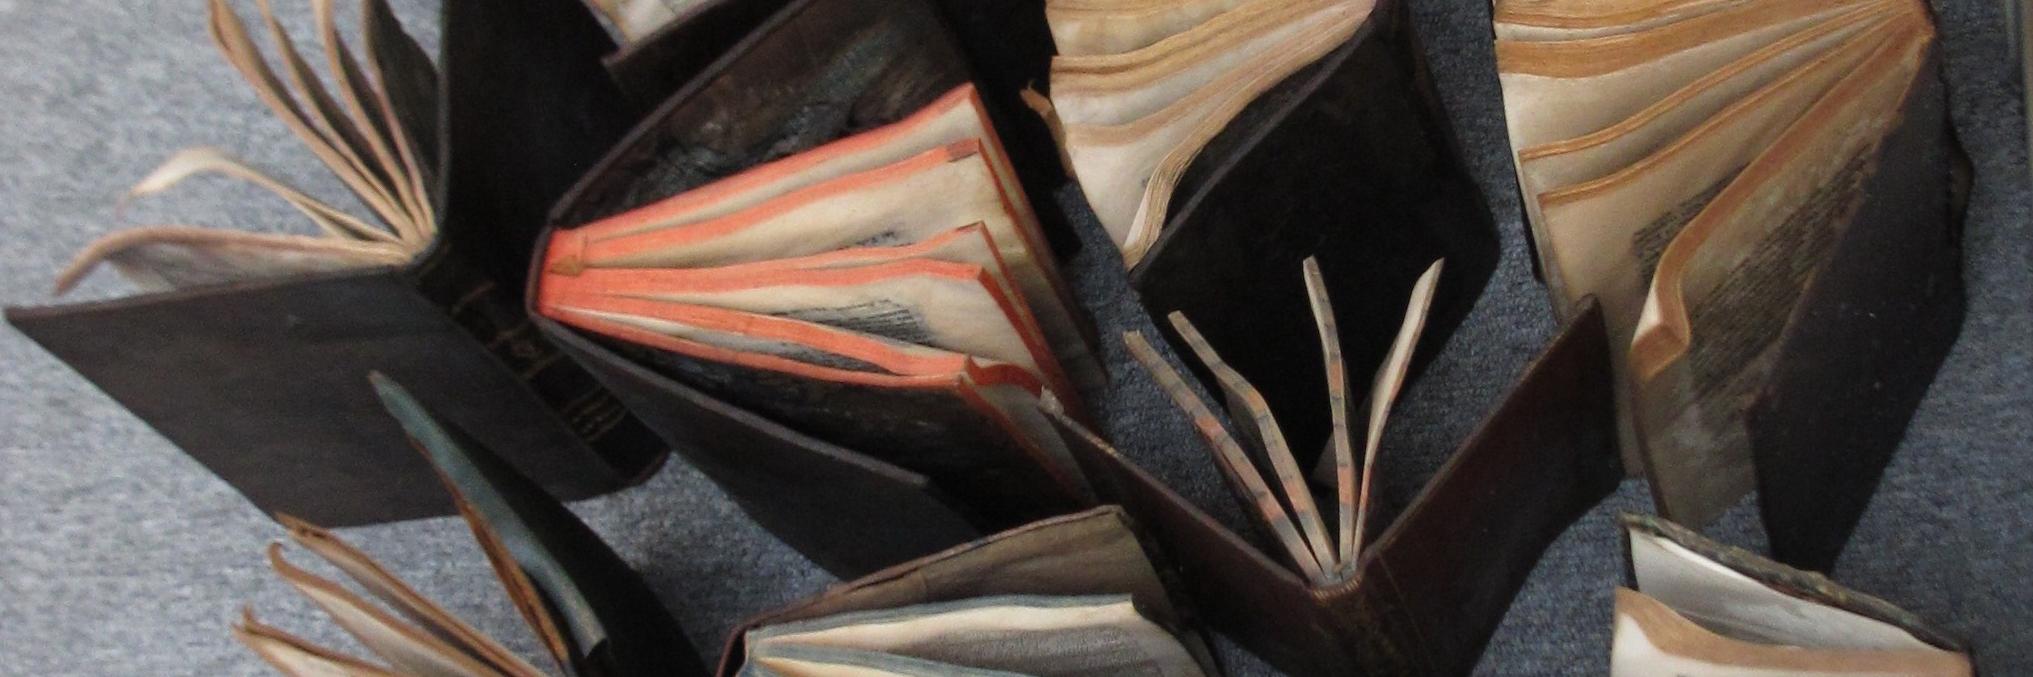 Libros rescatados en el Centro de Documentación Patrimonial de la  U. de Talca en proceso de secado (Correa, S. 2016, Archivo CNCR).